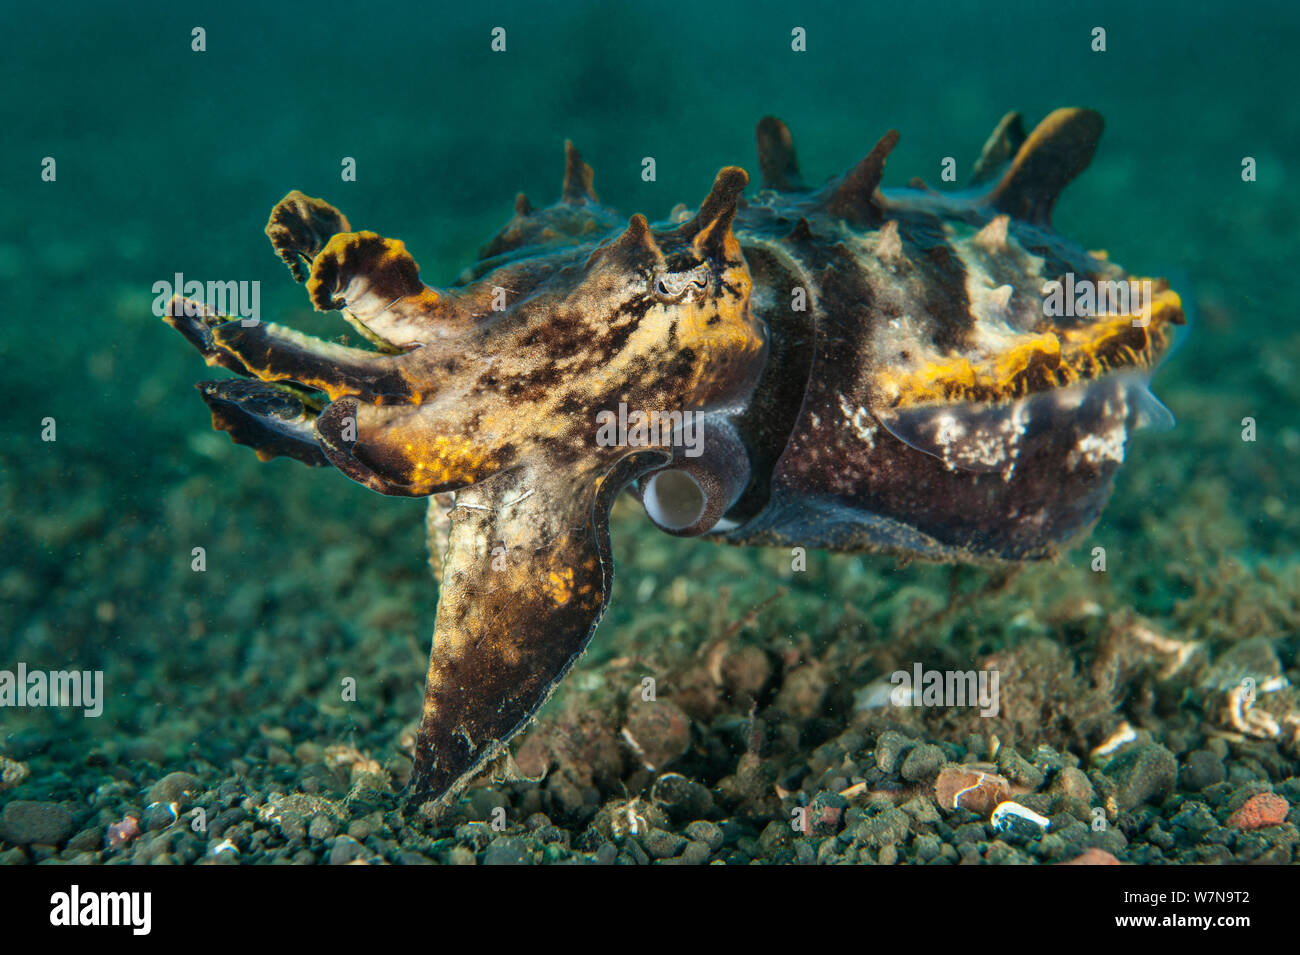 Pfeffer la vistosa jibia (Metasepia pfefferi) pasa justo por encima del fondo marino. El mayor de los ejemplares de esta especie, como éste, no son tan coloridos como los más jóvenes. Estrecho de Lembeh, Mar de Molucas, al norte de Sulawesi, Indonesia, el sur de Asia oriental. Foto de stock